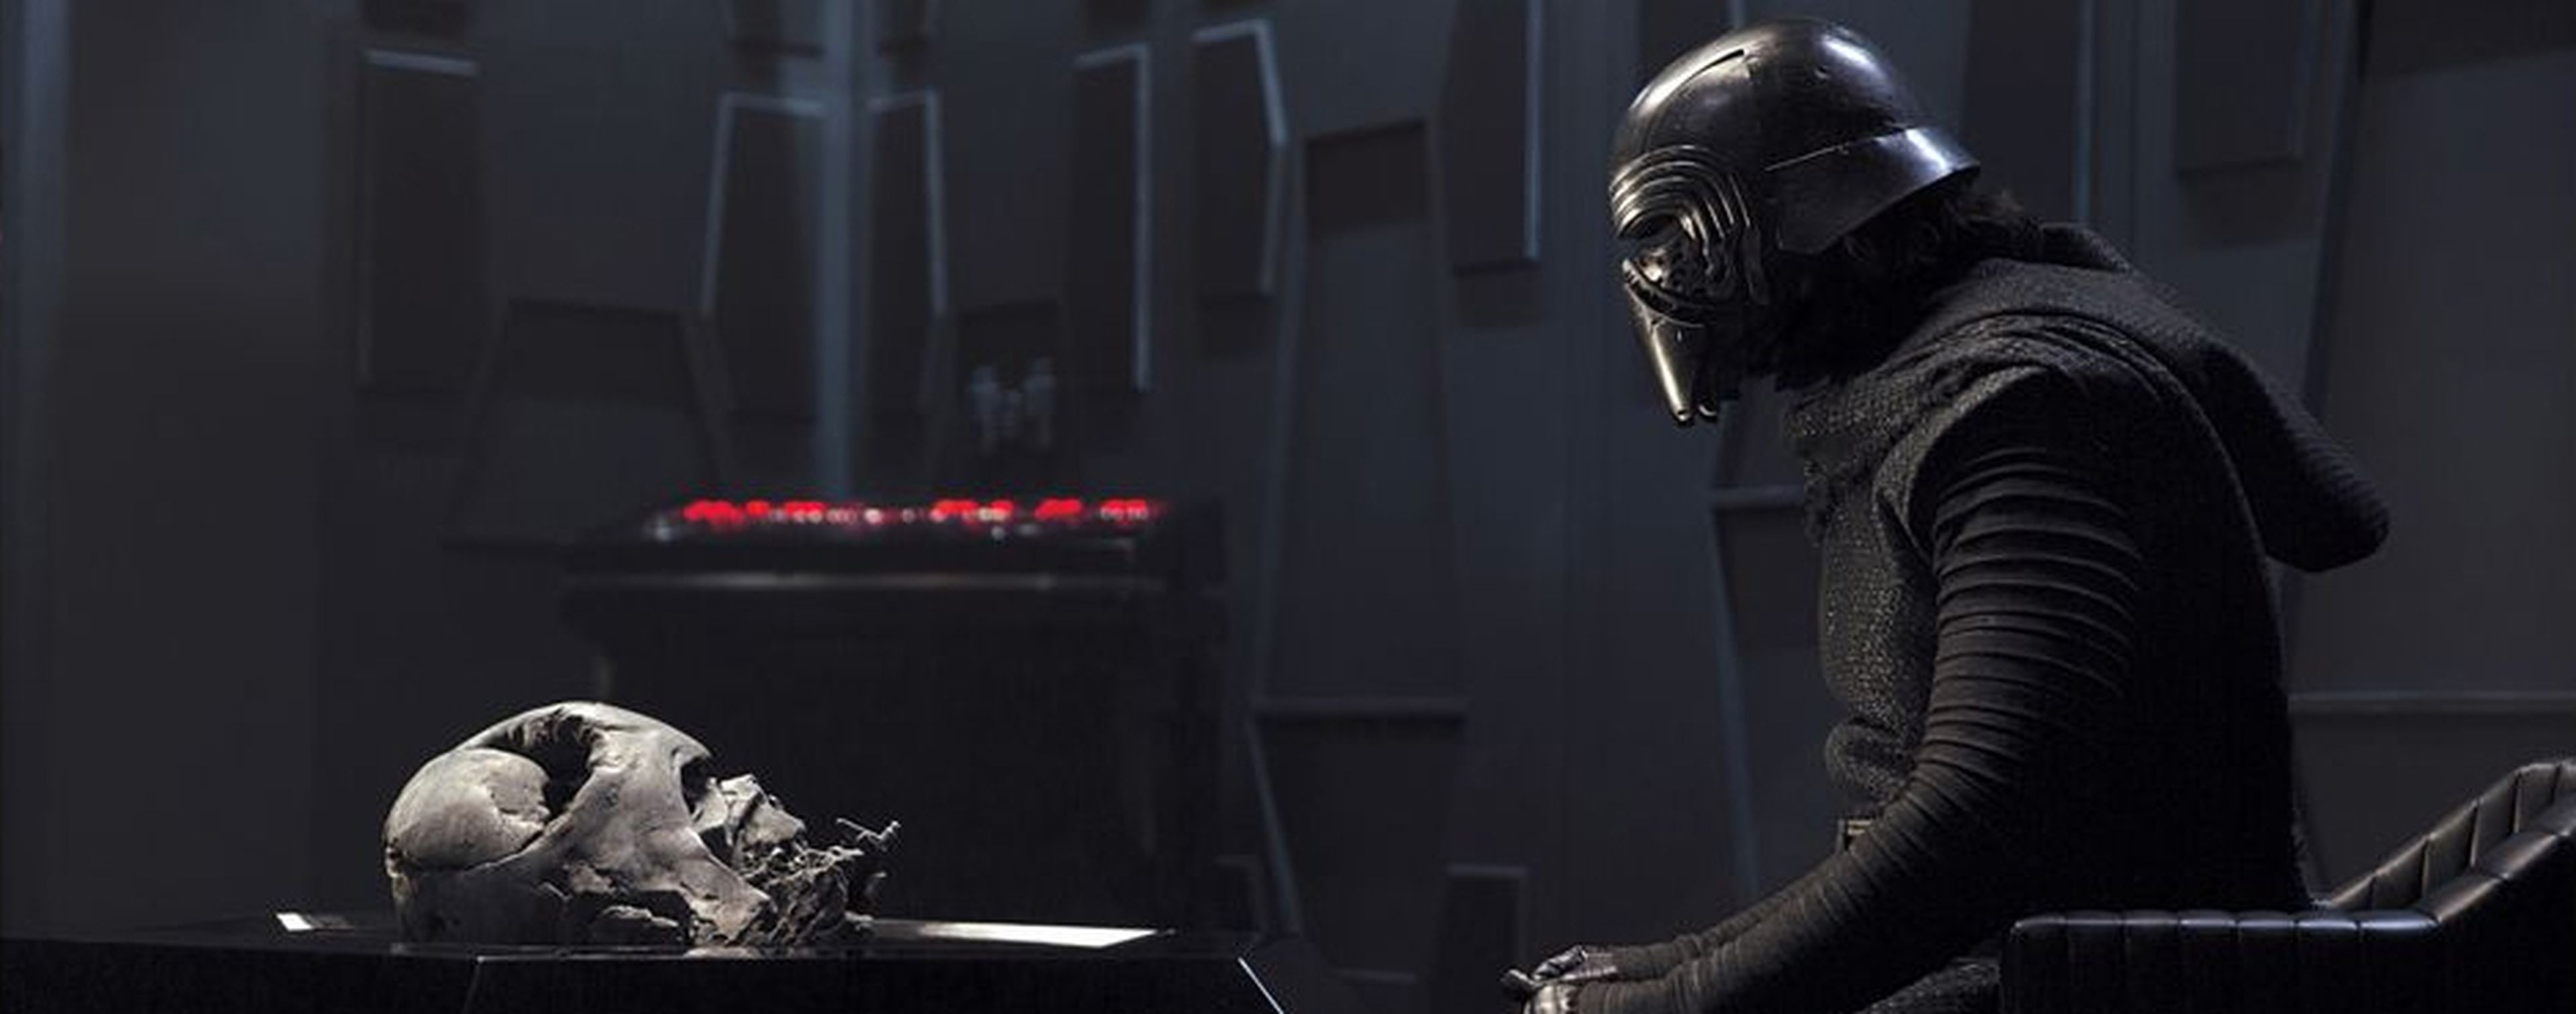 Star Wars - Asi quedó el casco de Darth Vader en realidad